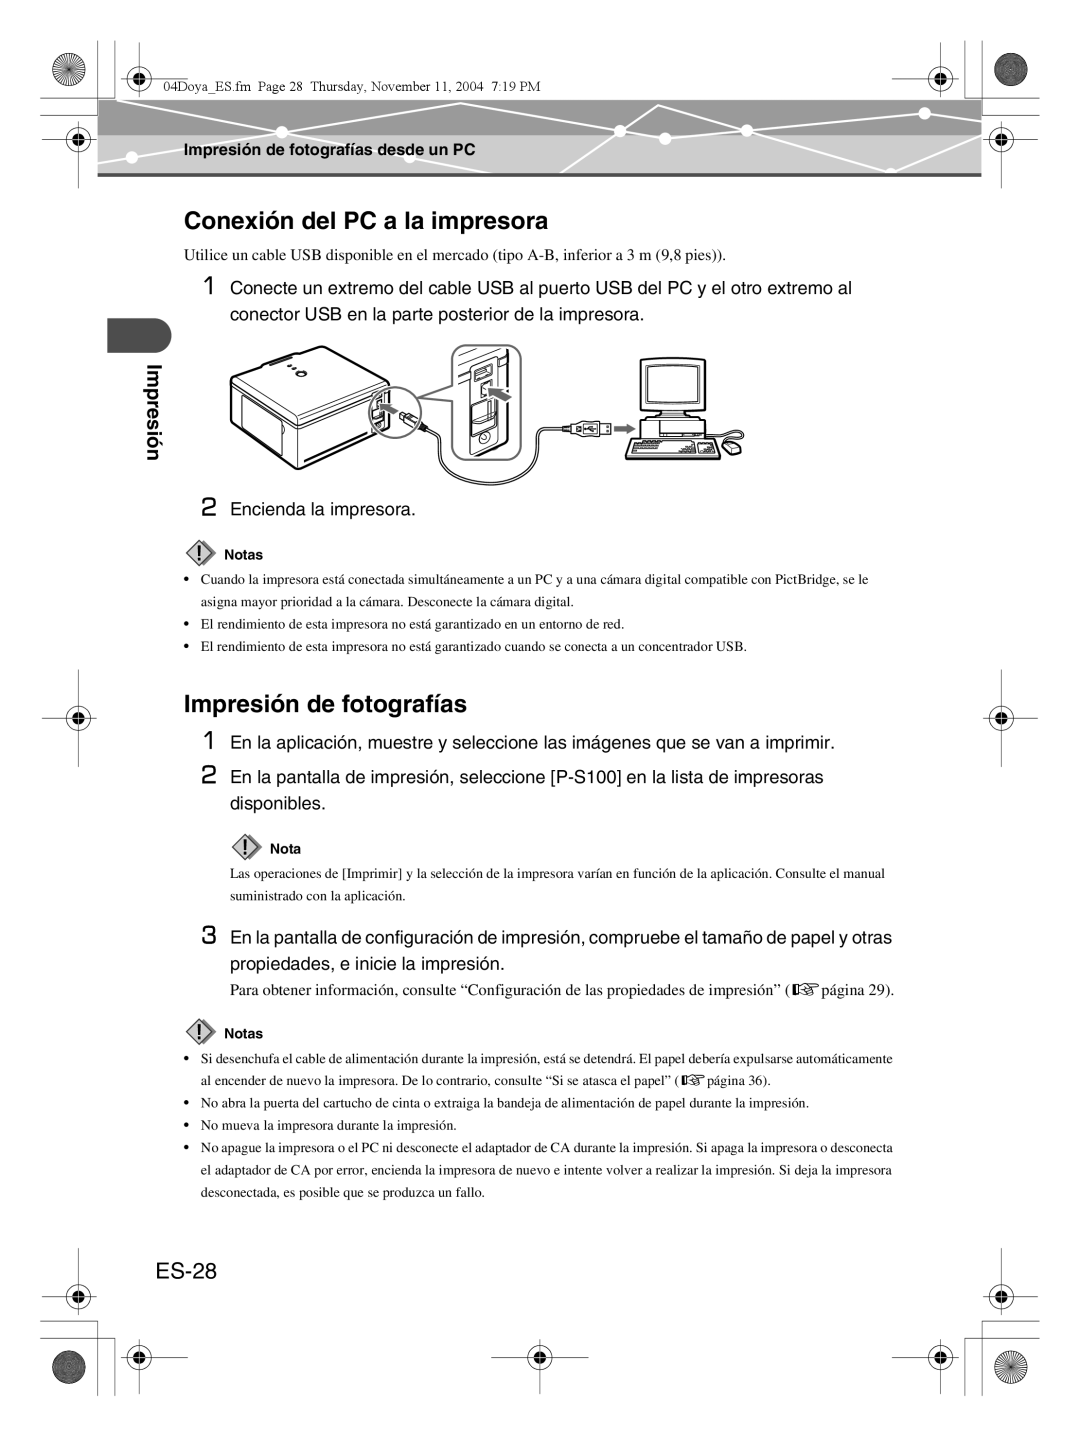 Olympus P-S100 user manual Conexión del PC a la impresora, Impresión de fotografías, ES-28 